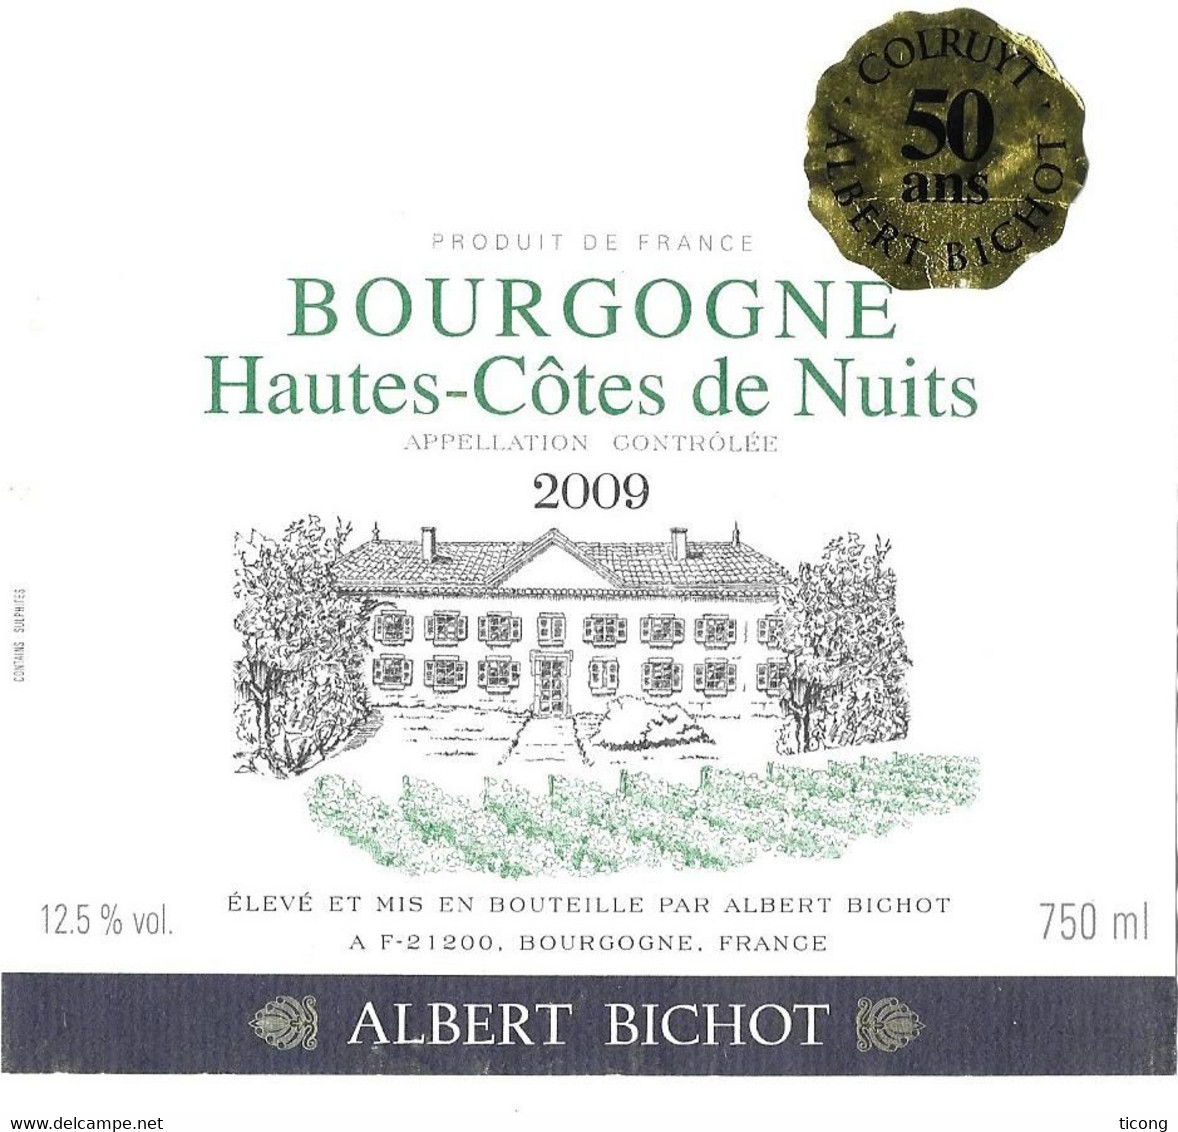 THEME CHATEAUX, HAUTES COTES DE NUITS BOURGOGNE 2009 ( 50 ANS ) ALBERT BICHOT A BEAUNE COTE D OR, VOIR LE SCANNER - Châteaux